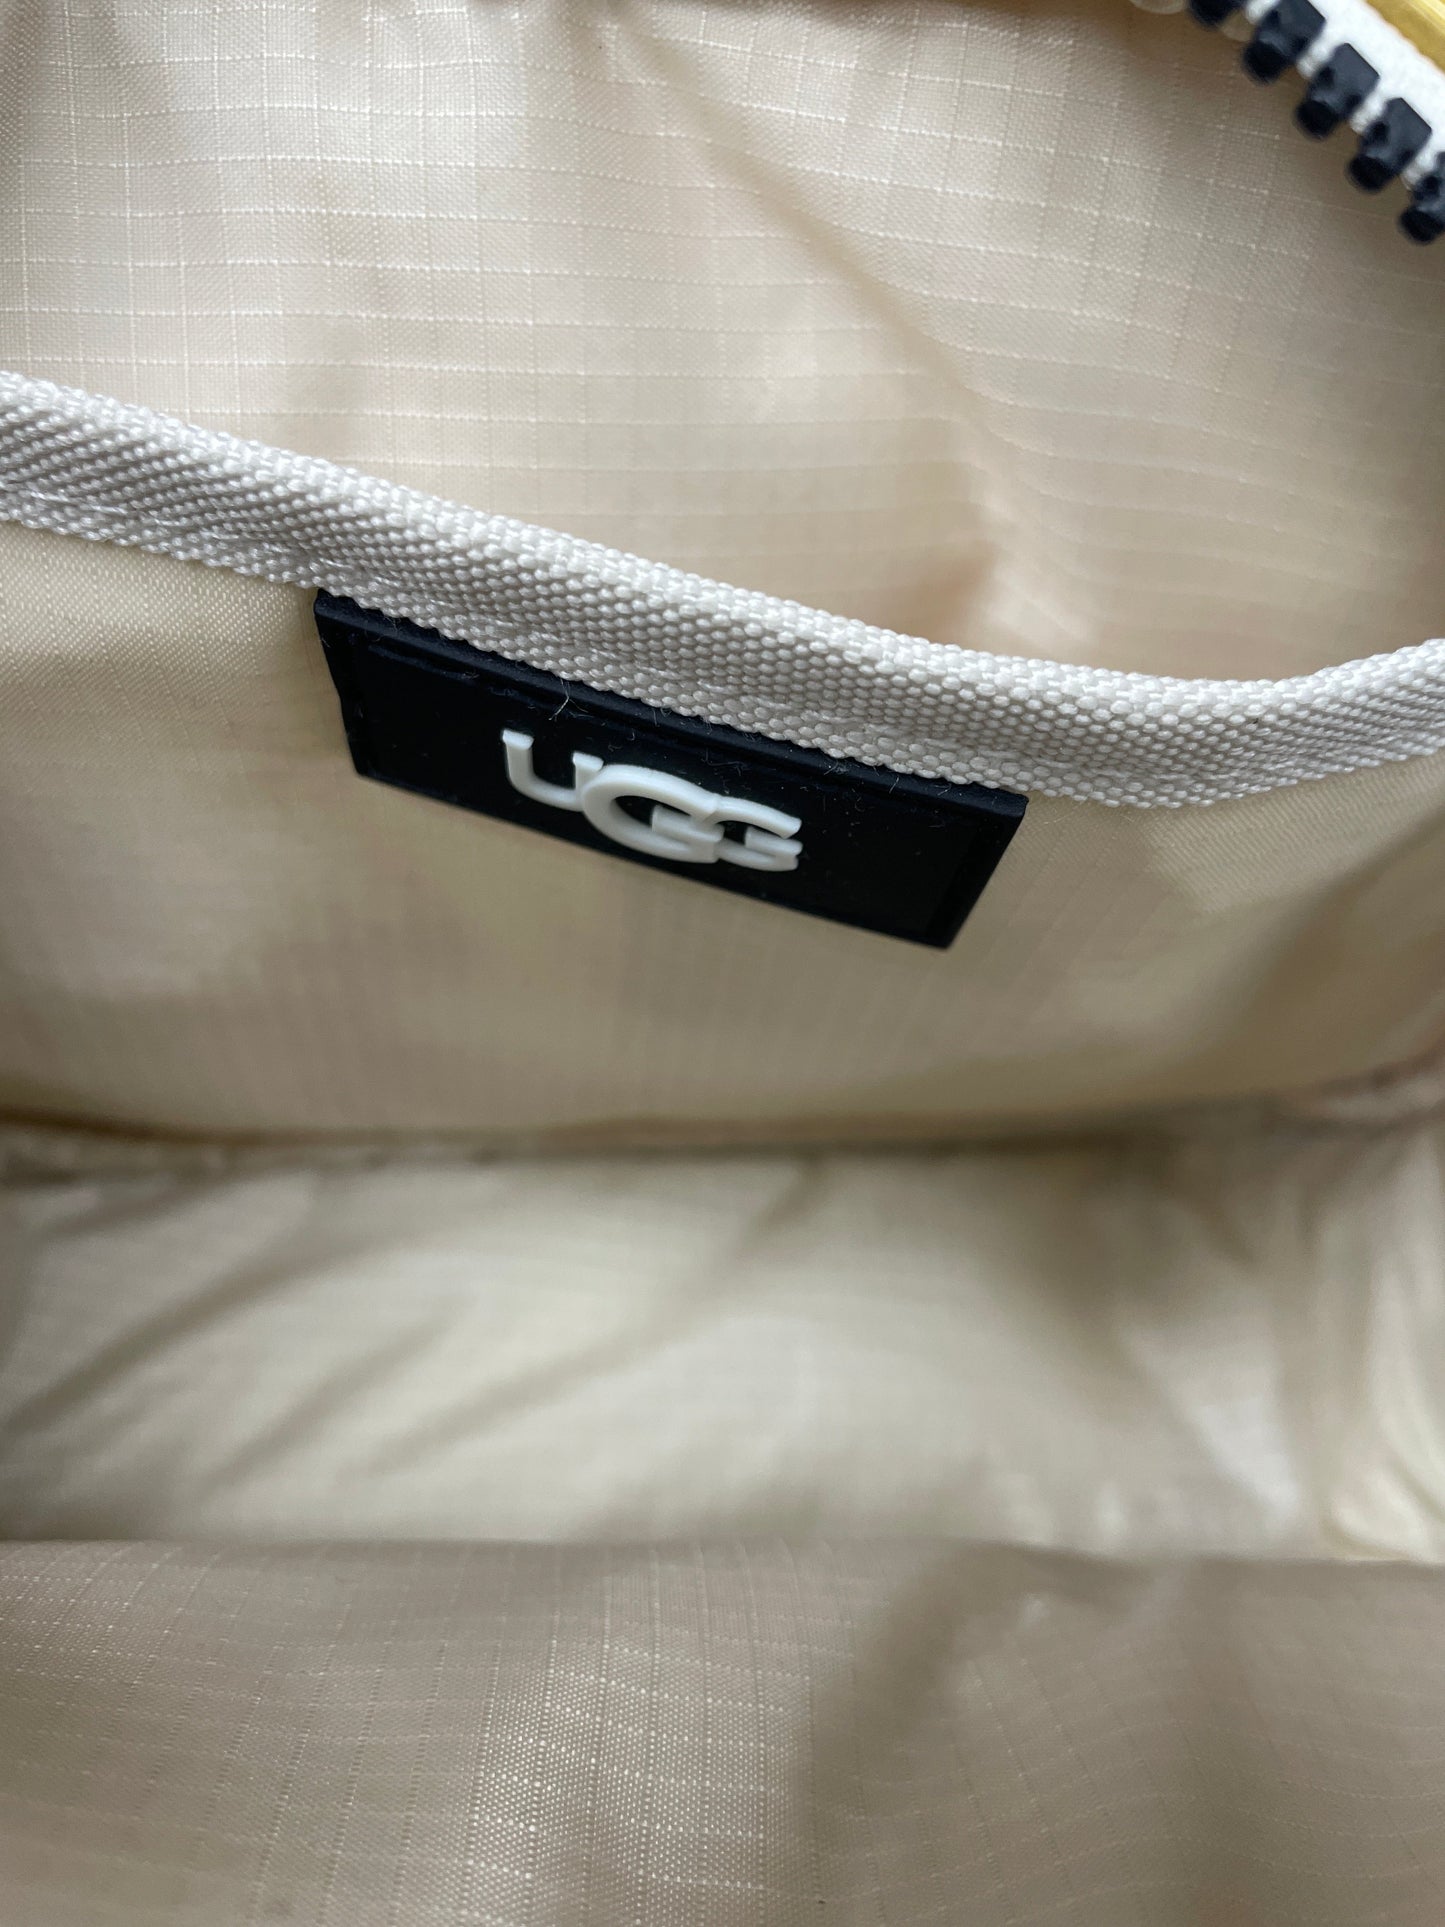 Belt Bag By Ugg  Size: Medium